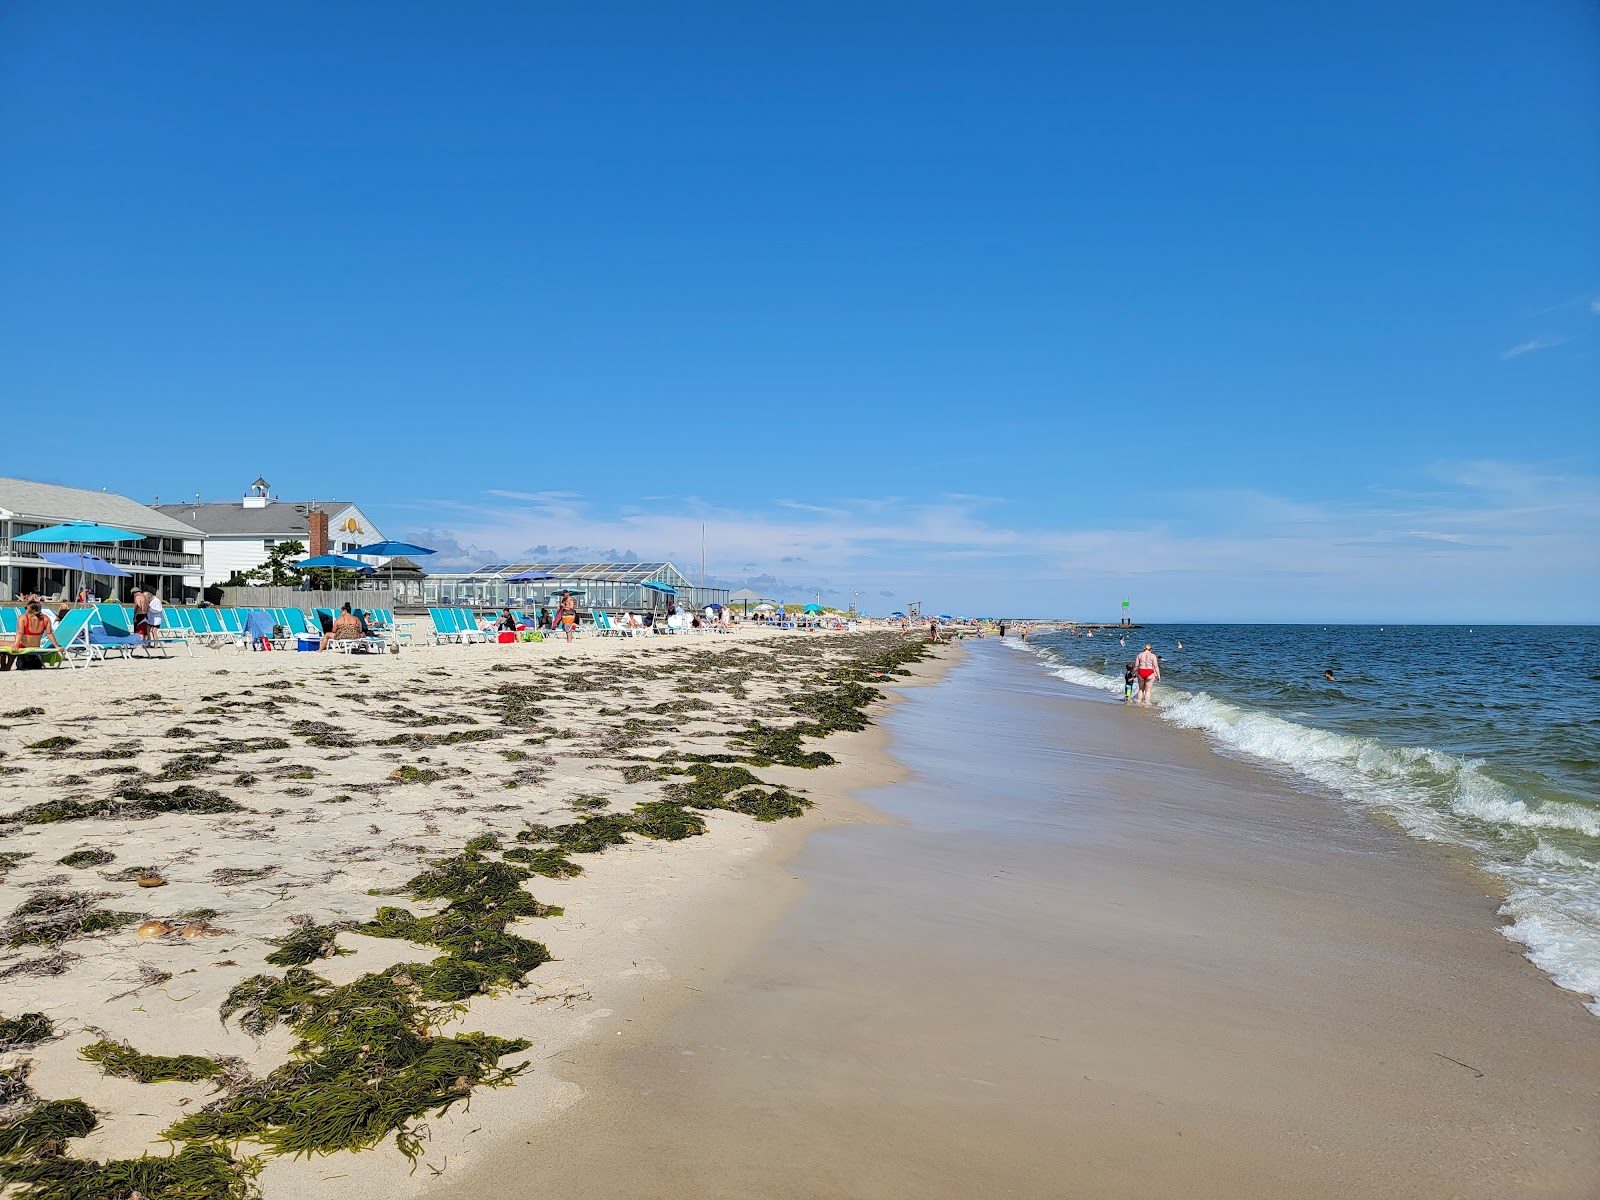 Zdjęcie South Middle Beach z powierzchnią jasny piasek